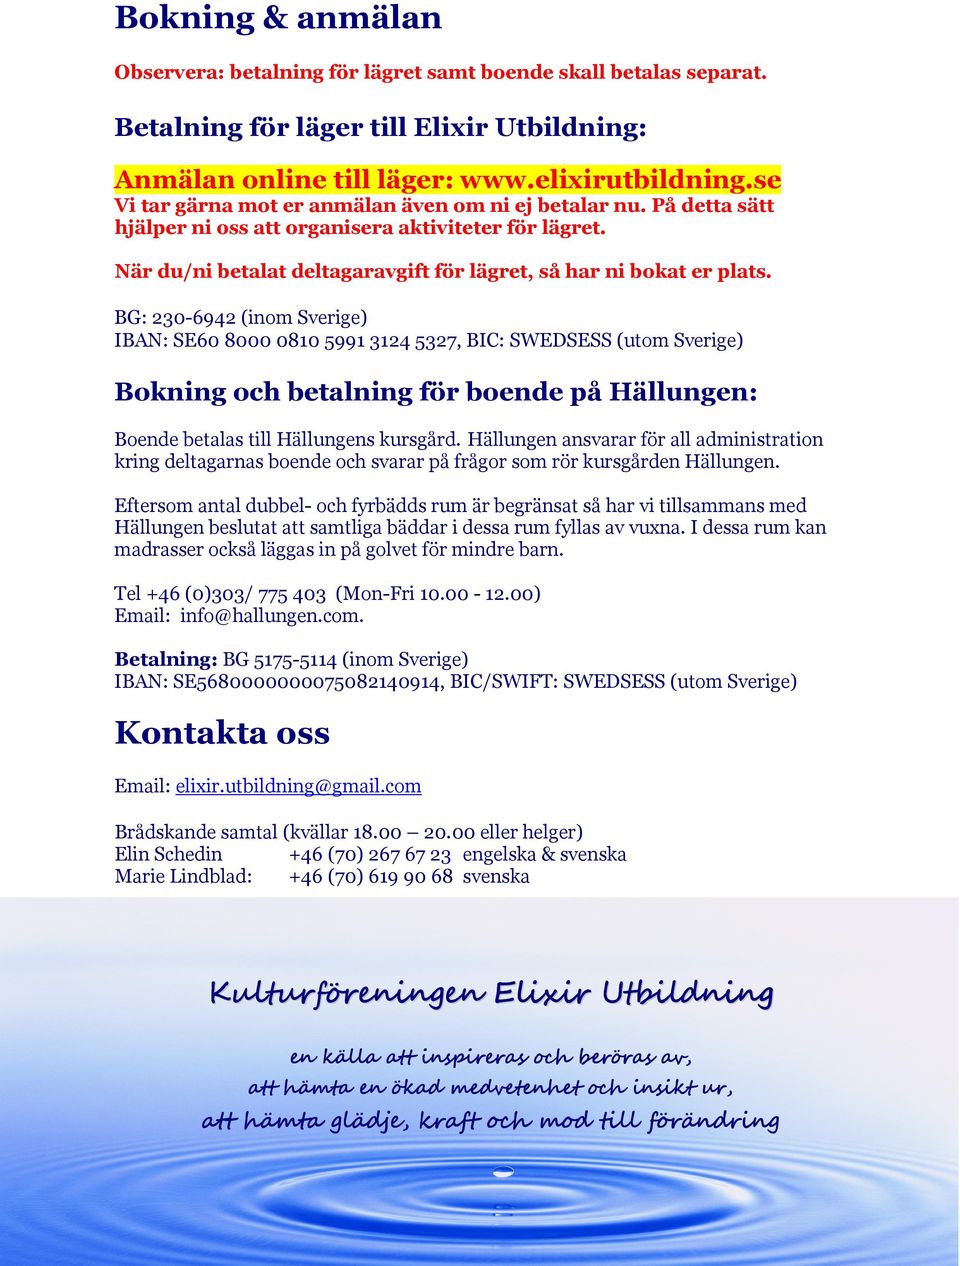 BG: 230-6942 (inom Sverige) IBAN: SE60 8000 0810 5991 3124 5327, BIC: SWEDSESS (utom Sverige) Bokning och betalning för boende på Hällungen: Boende betalas till Hällungens kursgård.